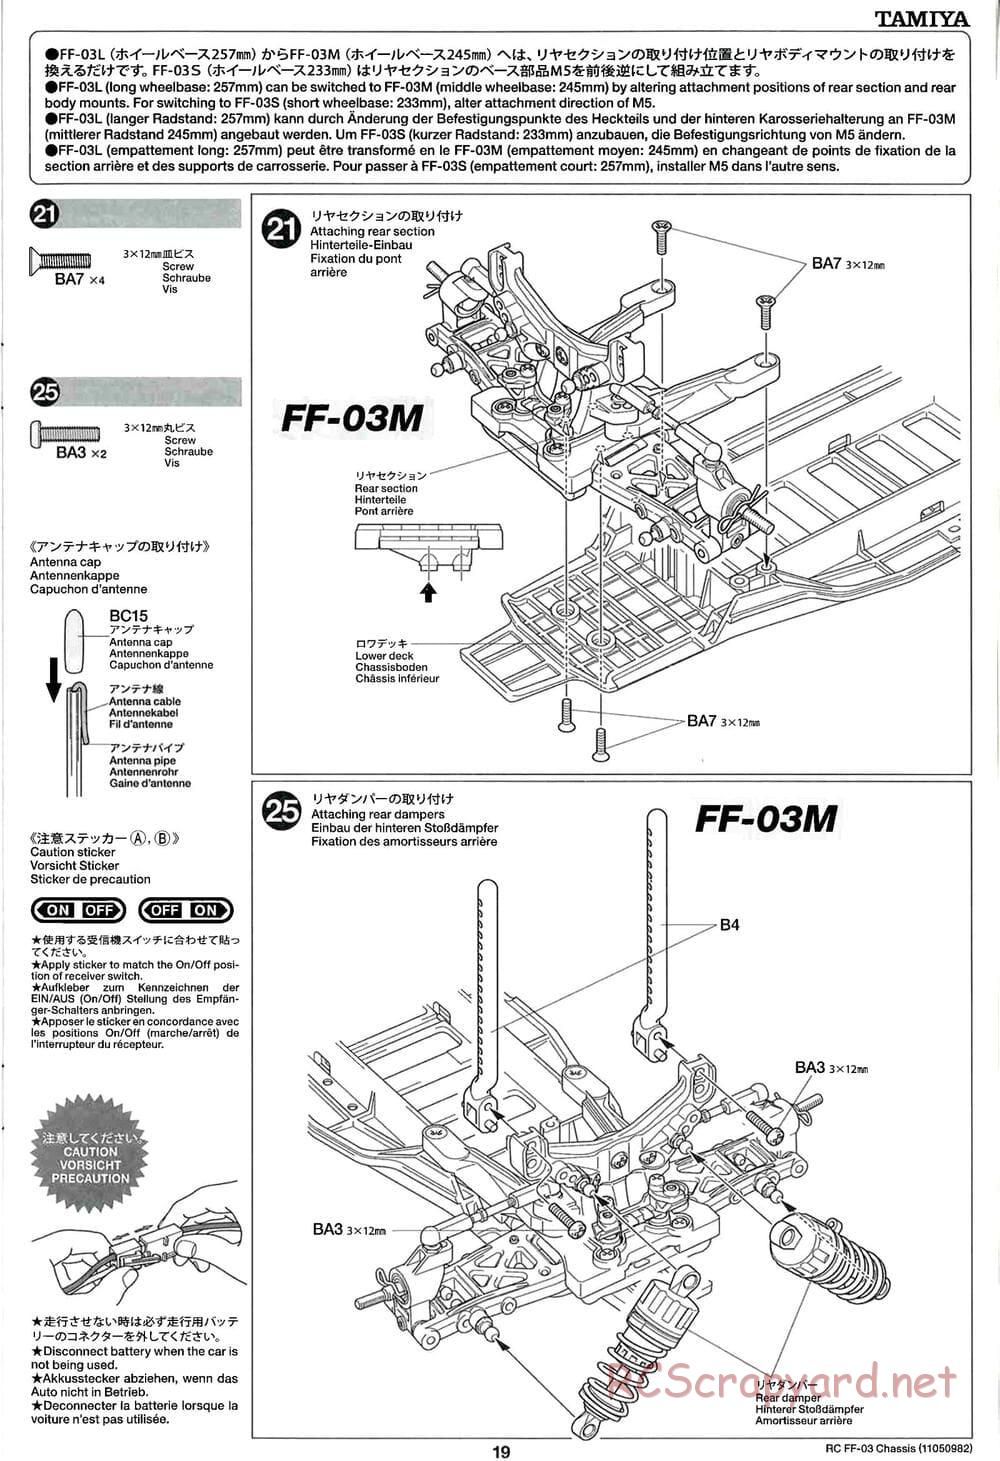 Tamiya - Castrol Honda Civic VTi - FF-03 Chassis - Manual - Page 19